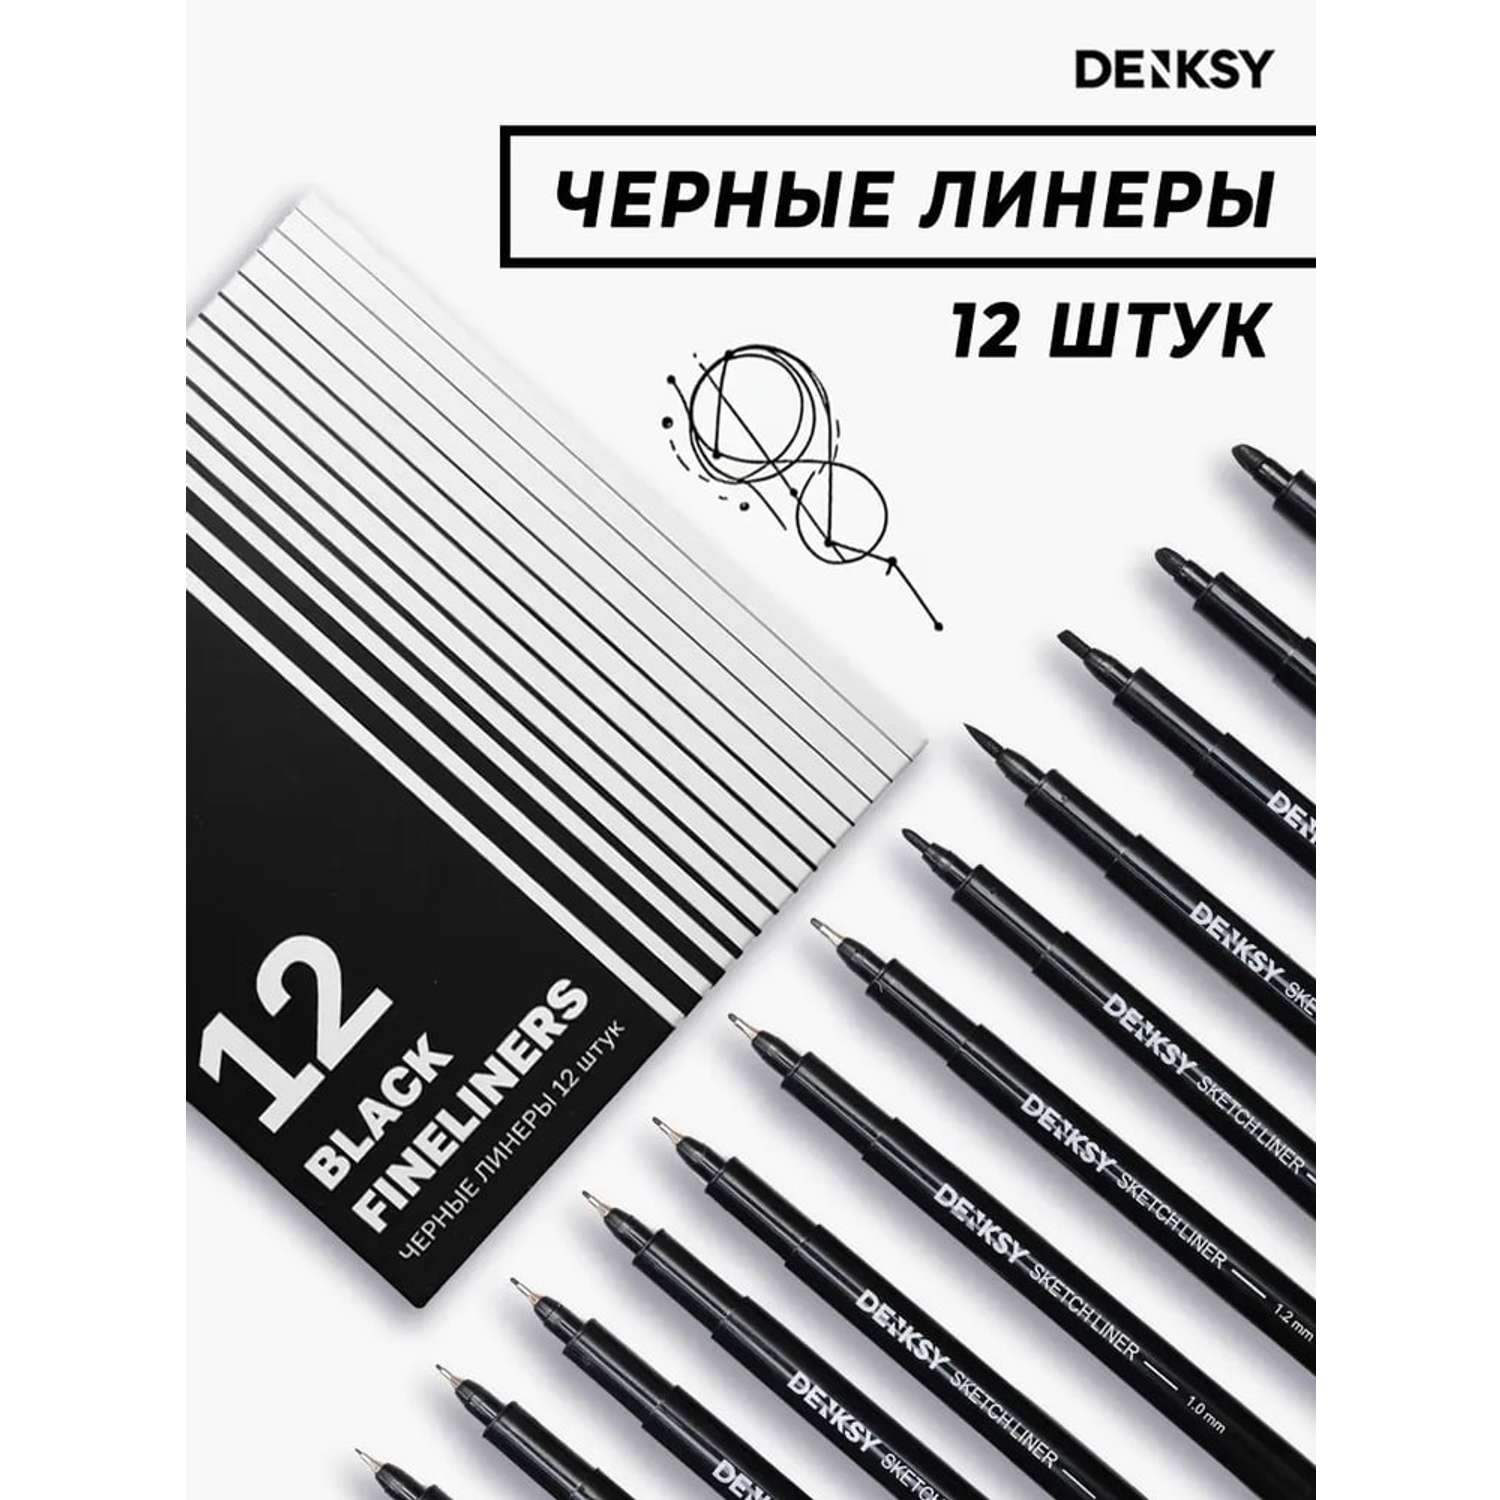 Капиллярные ручки DENKSY Капиллярные ручки линеры черные 12 штук для начинающих и студентов - фото 1